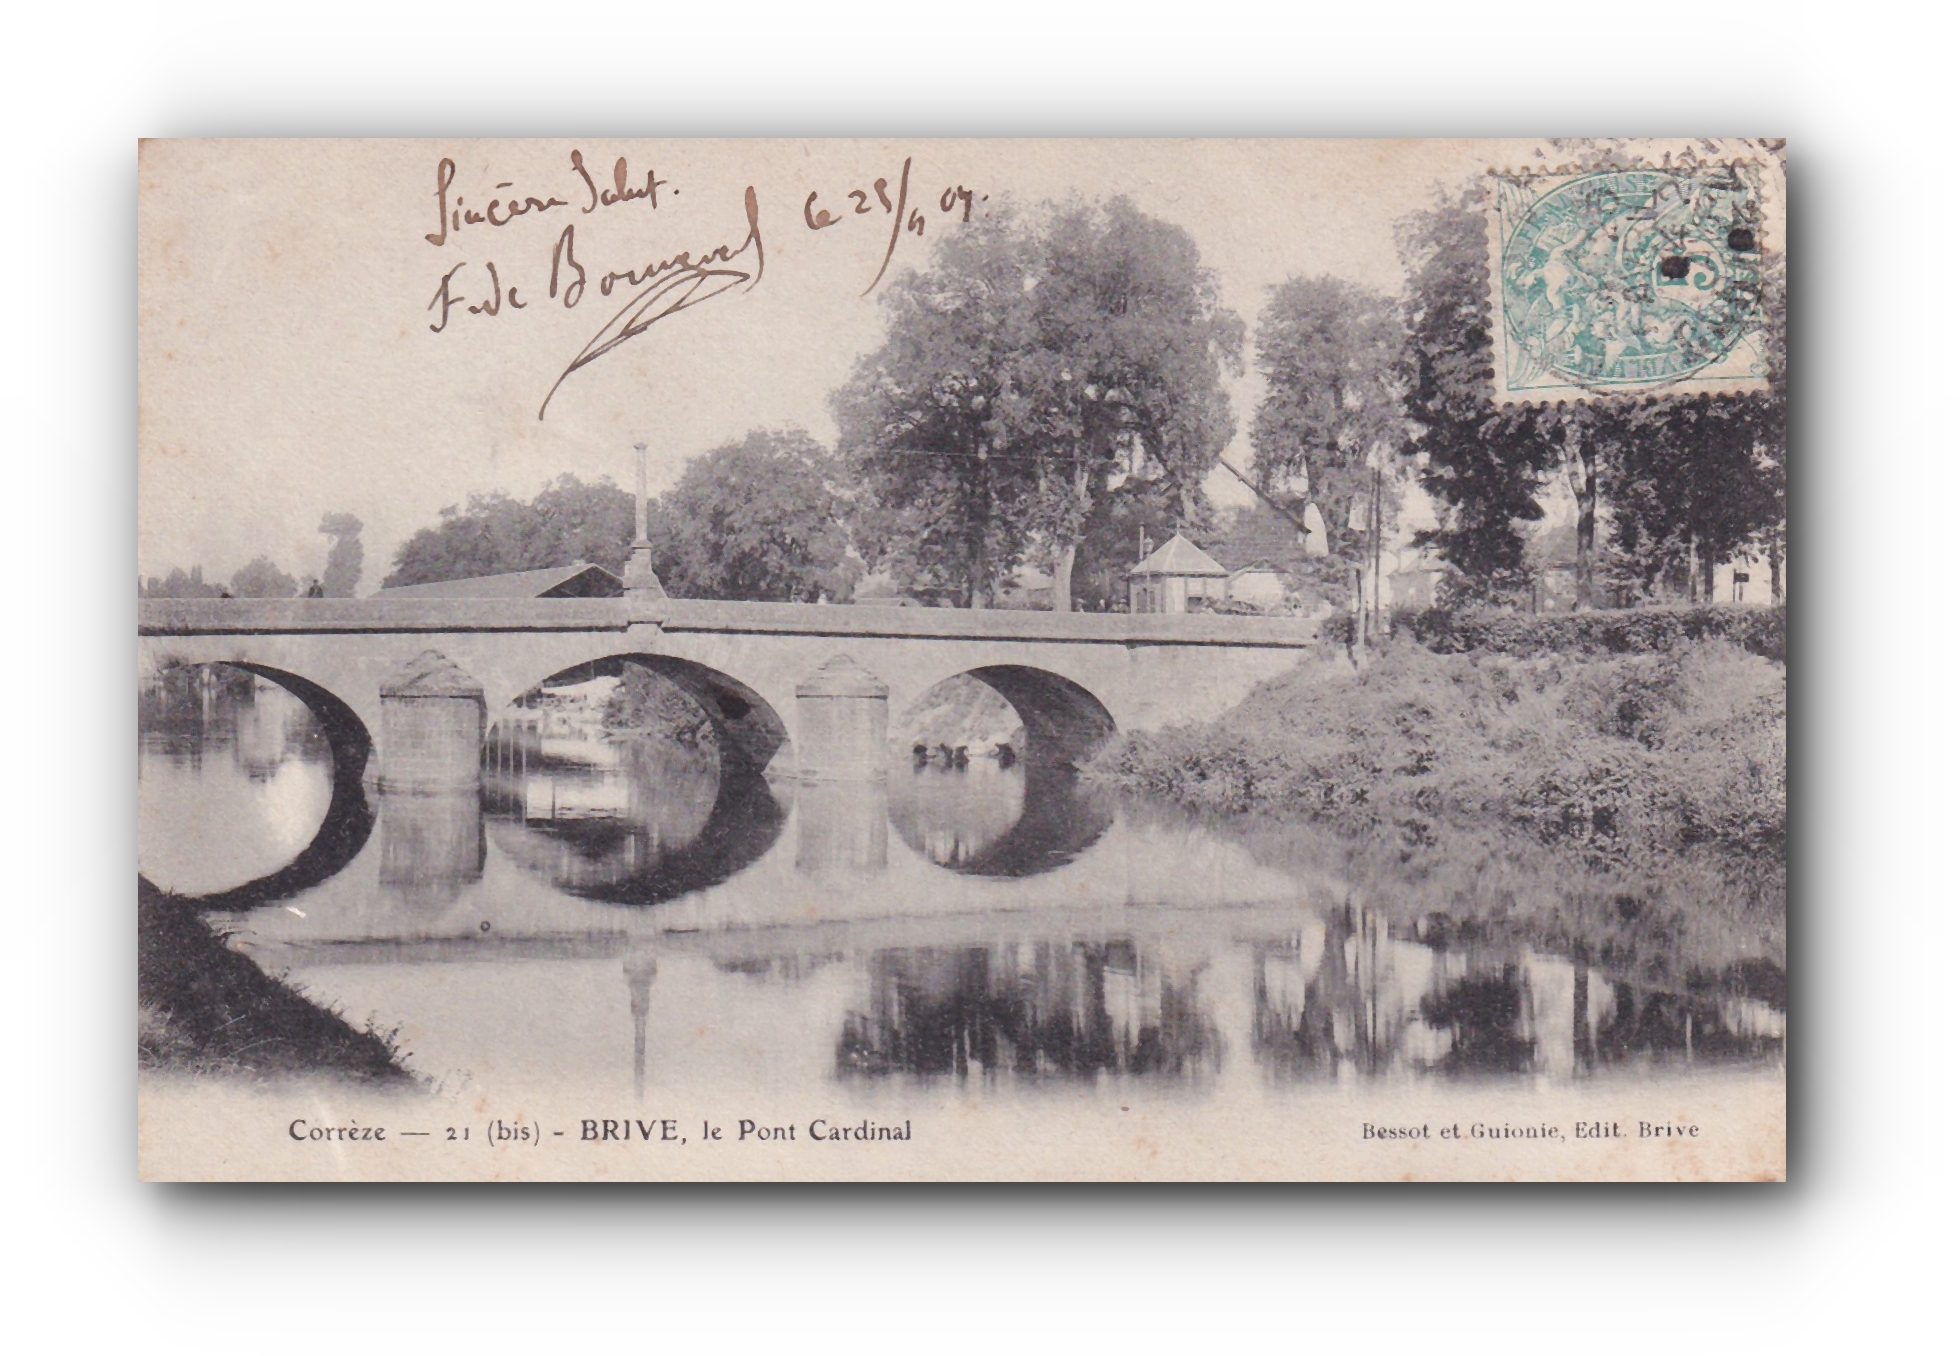 - Le Pont Cardinal - BRIVE - 28.04.1909 -